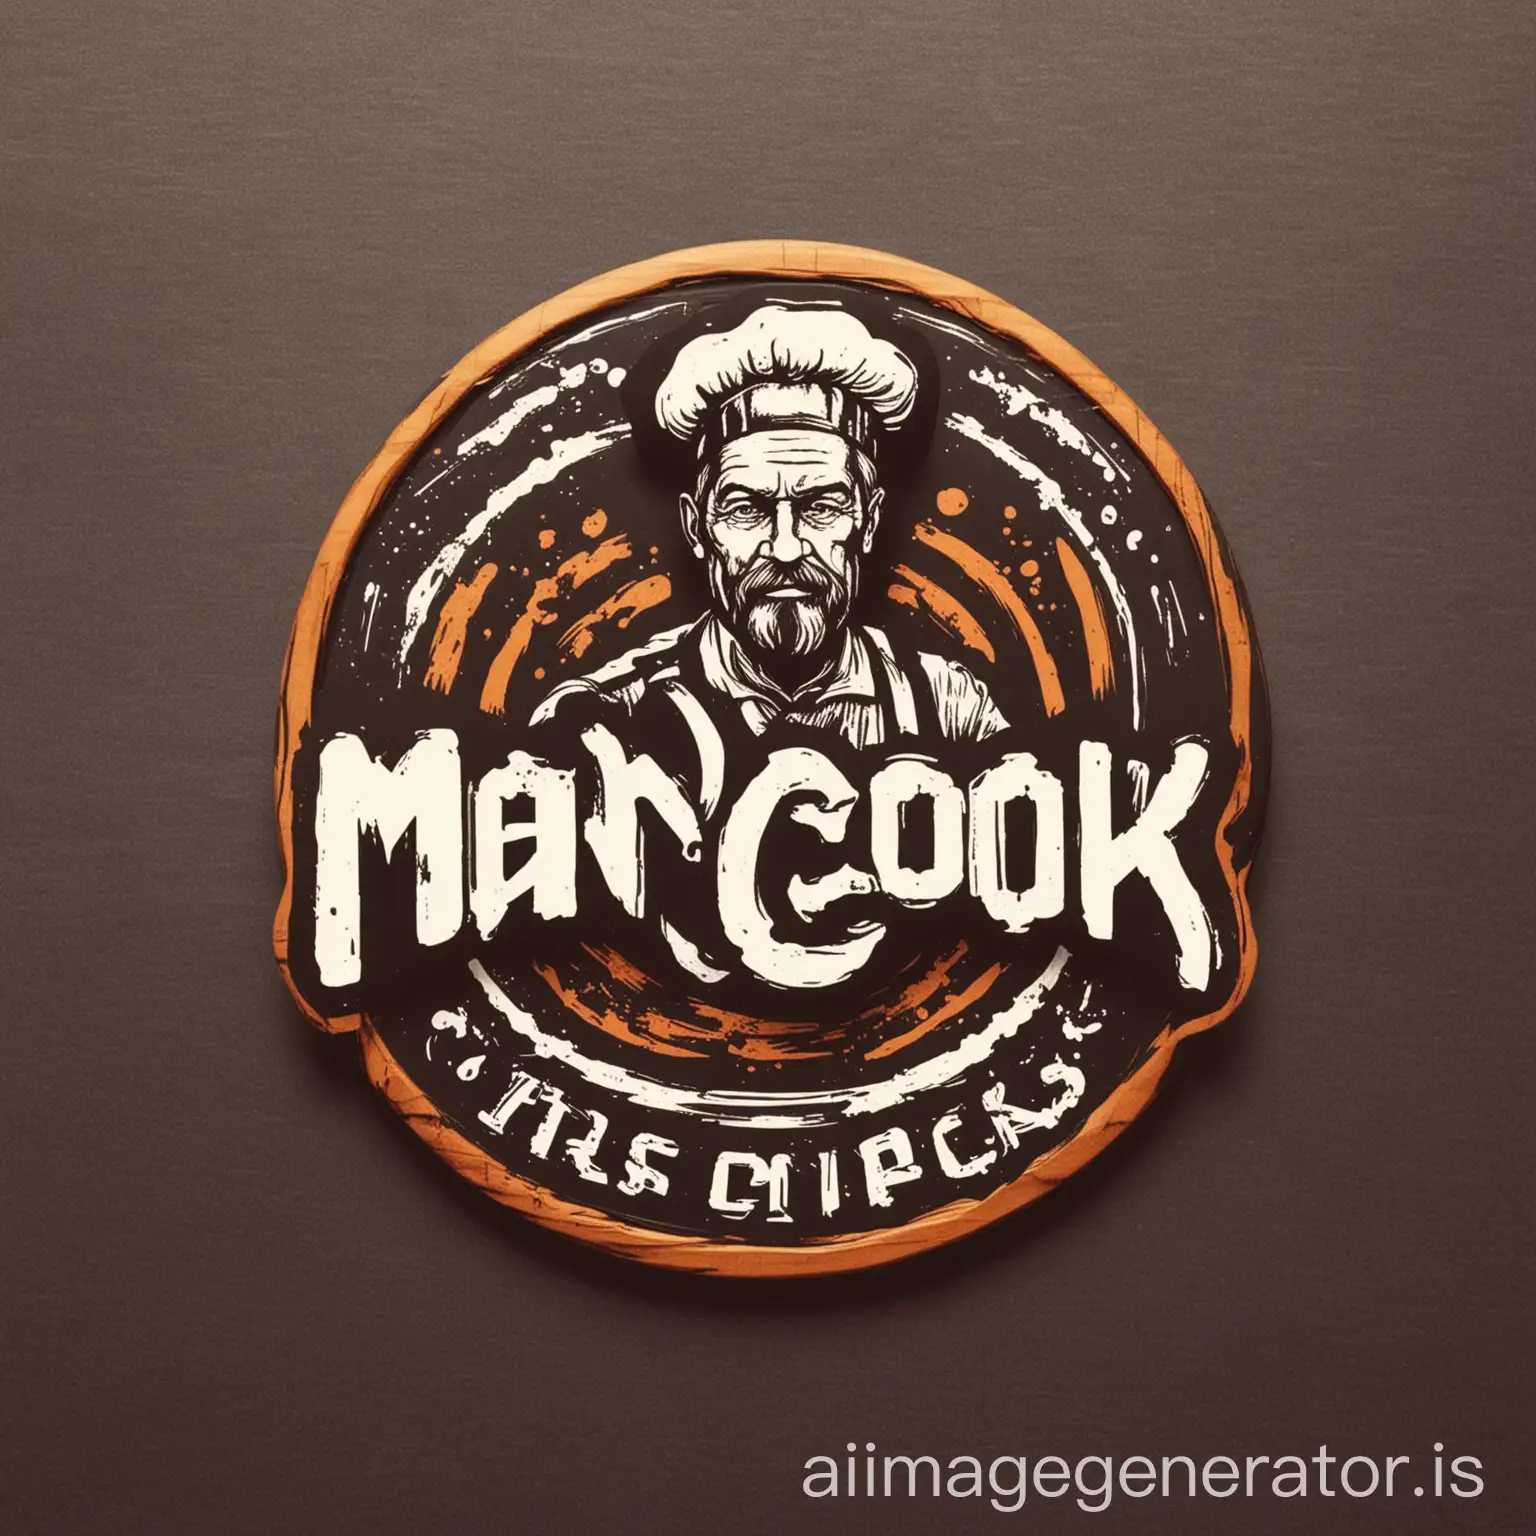 "Man Cook" logo